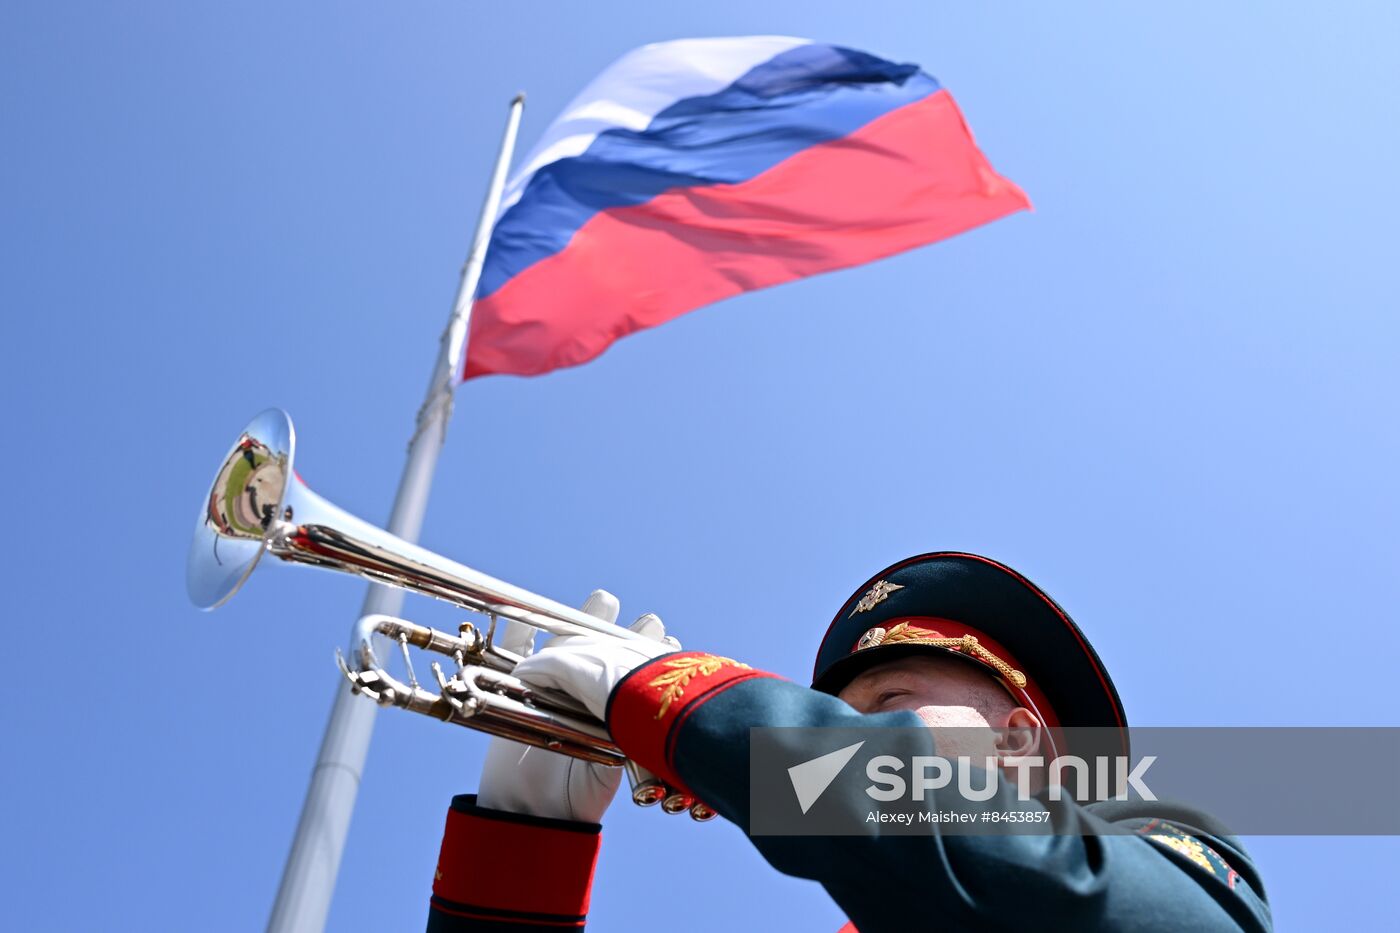 Russia Flag Raising